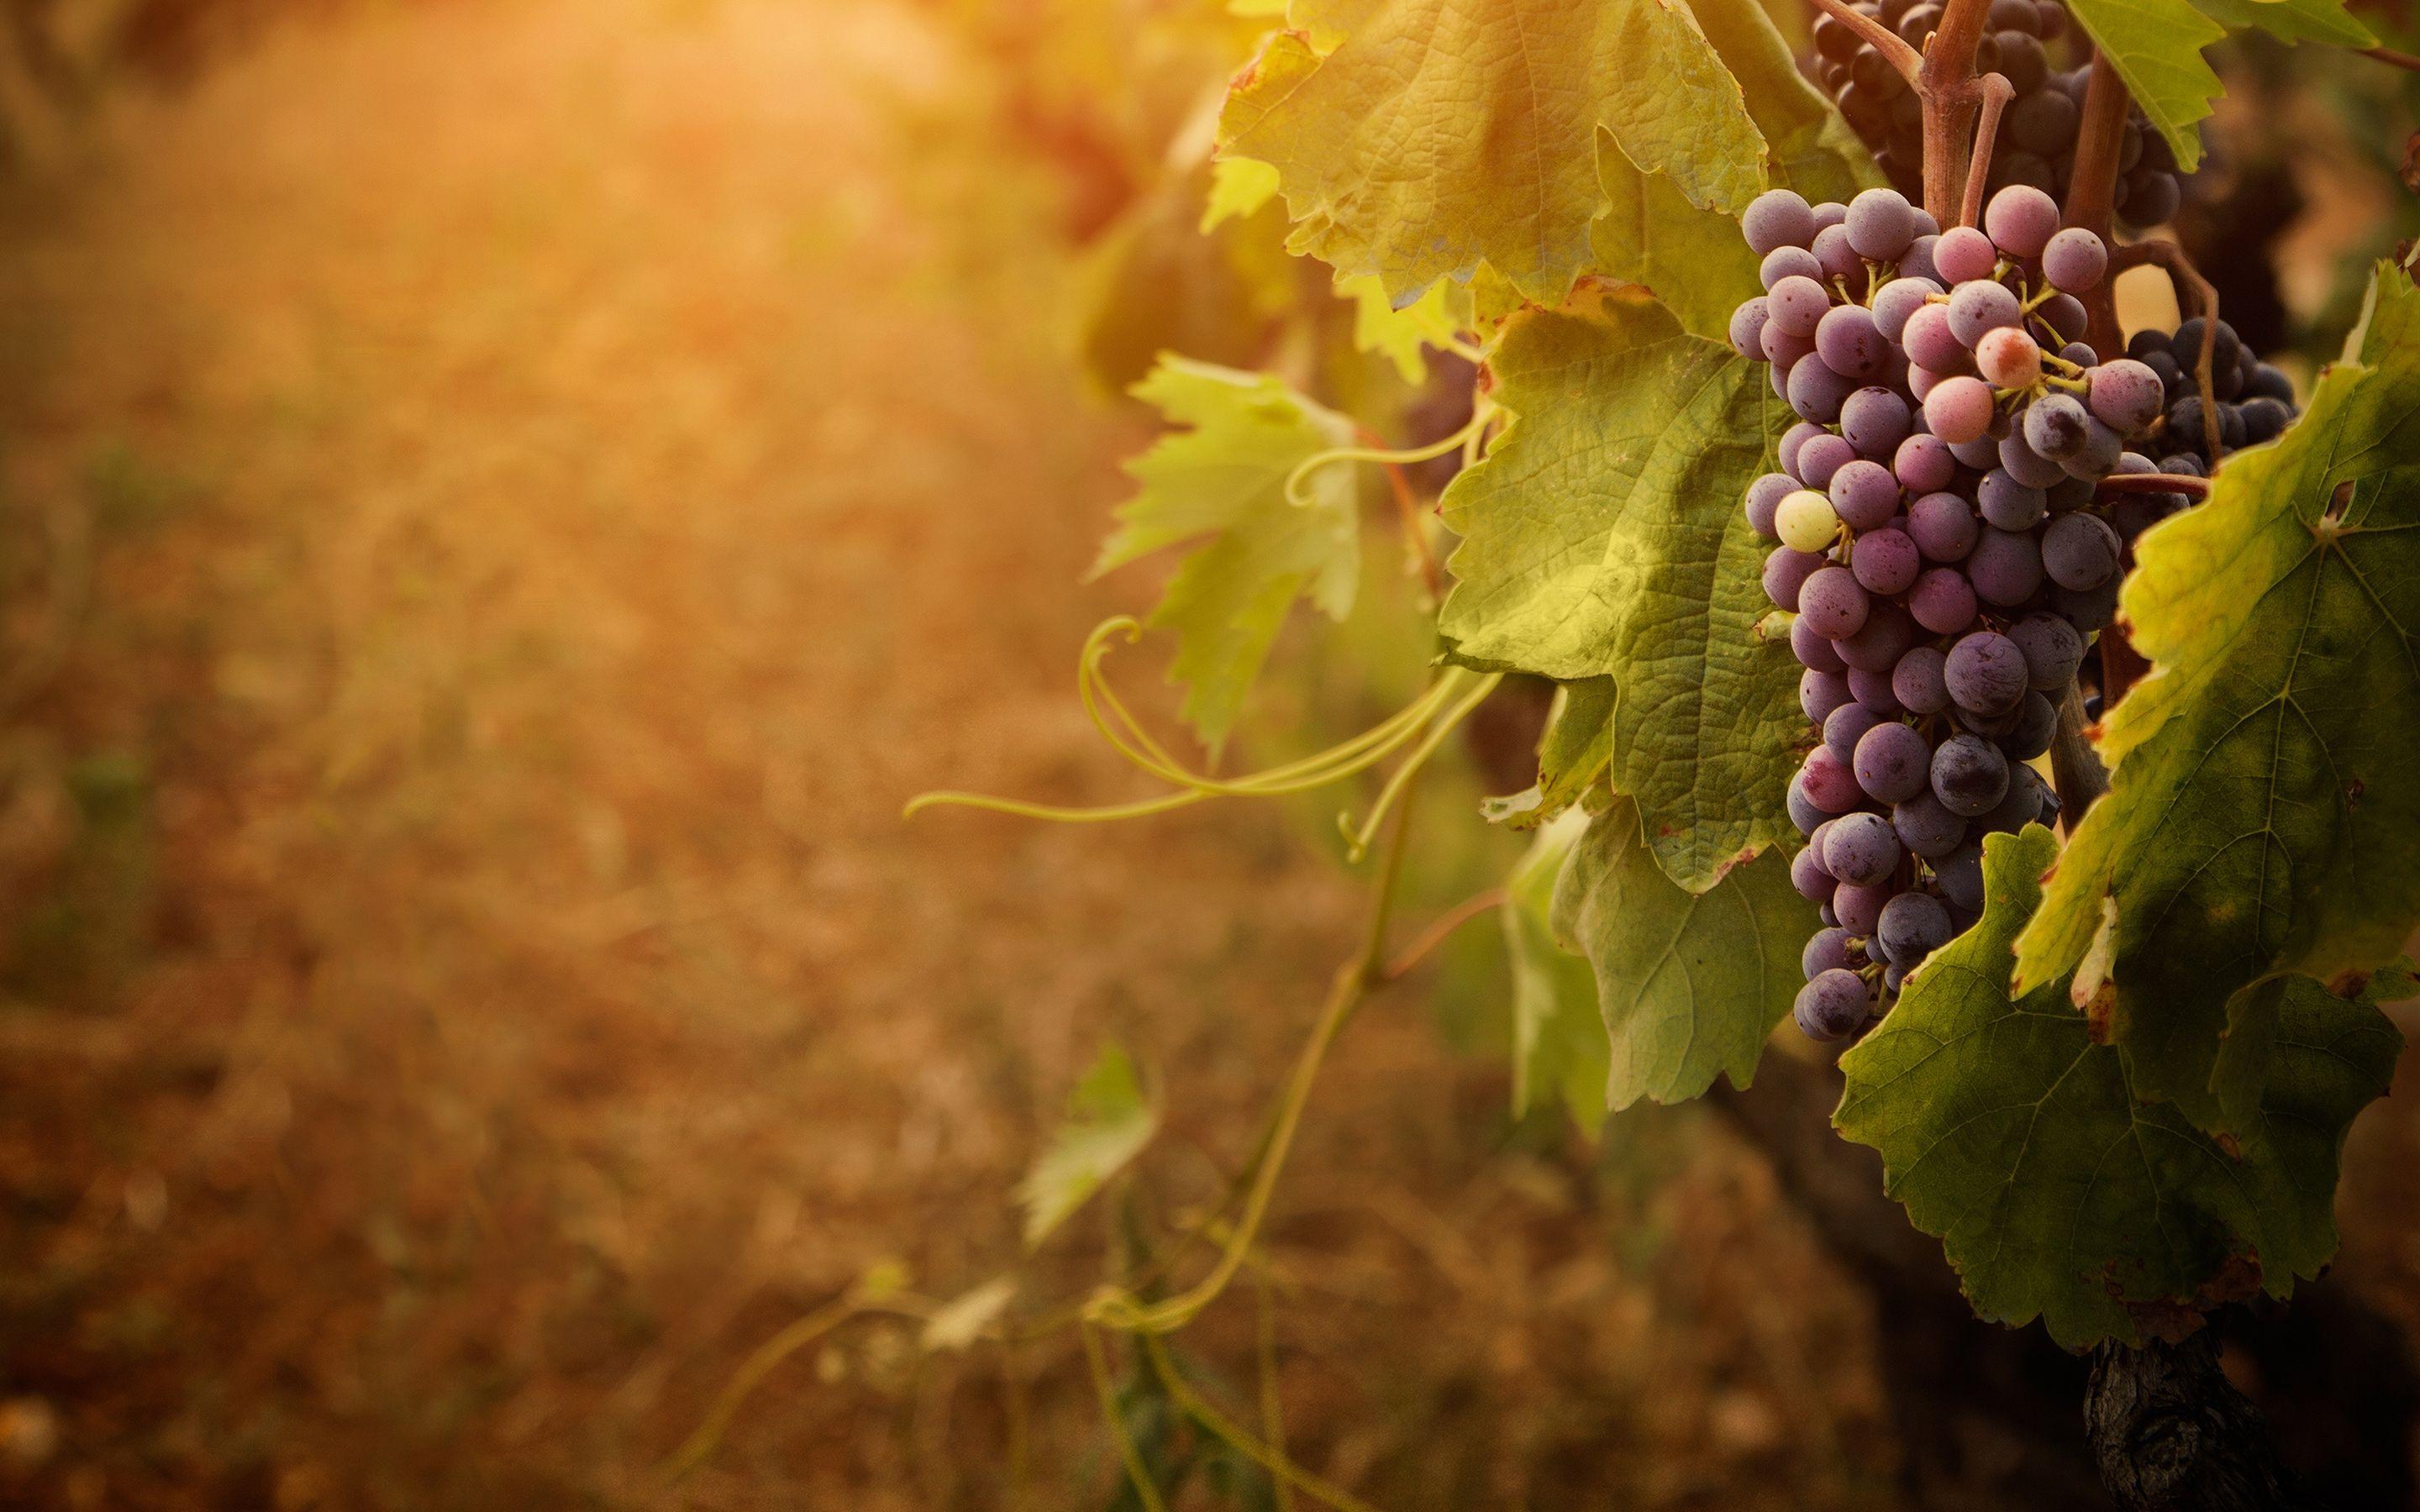 grape vine photography. Grapevine Wallpaper Picture Photo